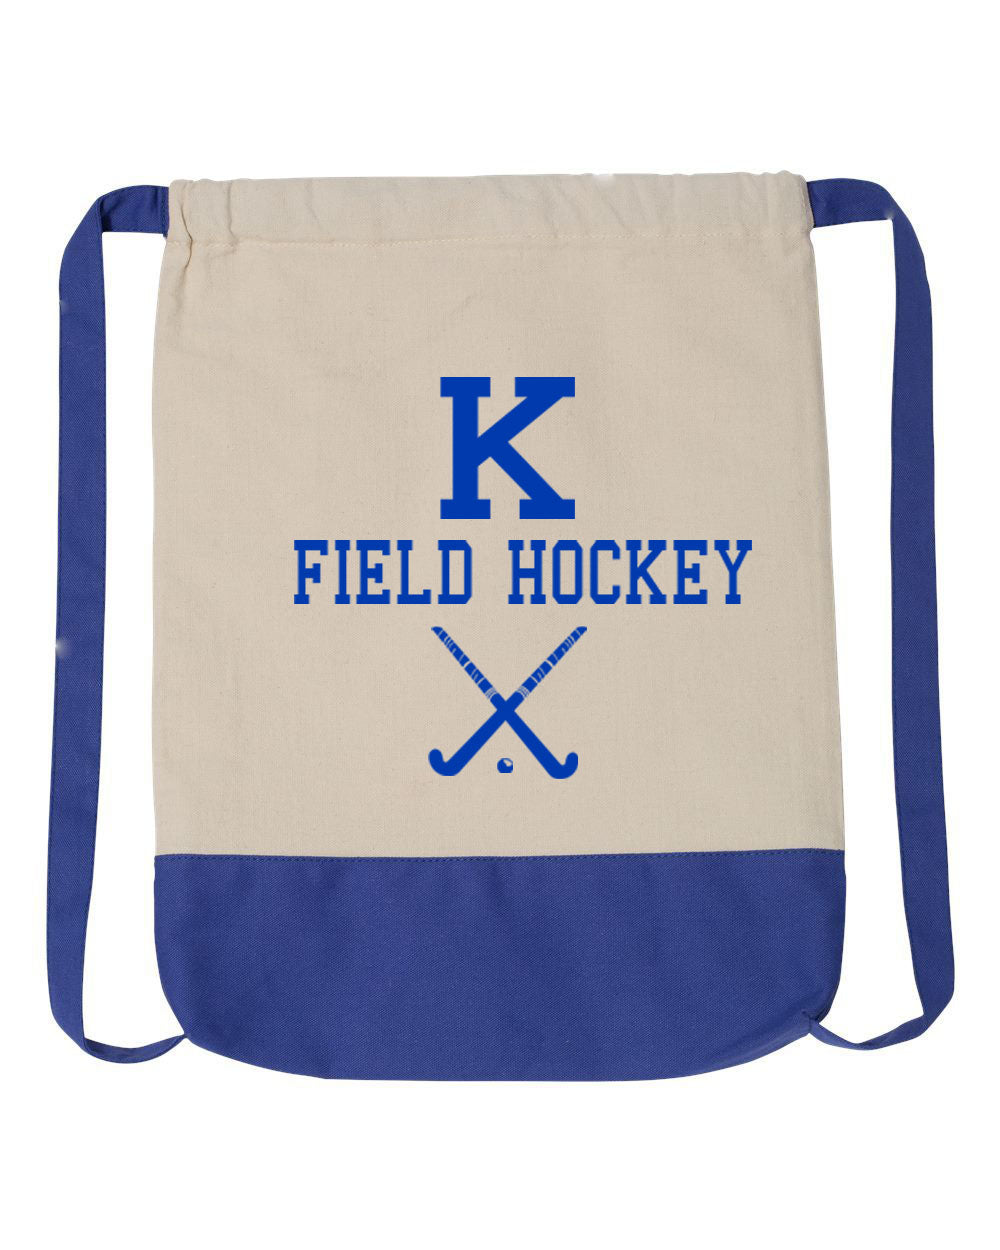 Kittatinny Jr High Field Hockey Design 5 Drawstring Bag